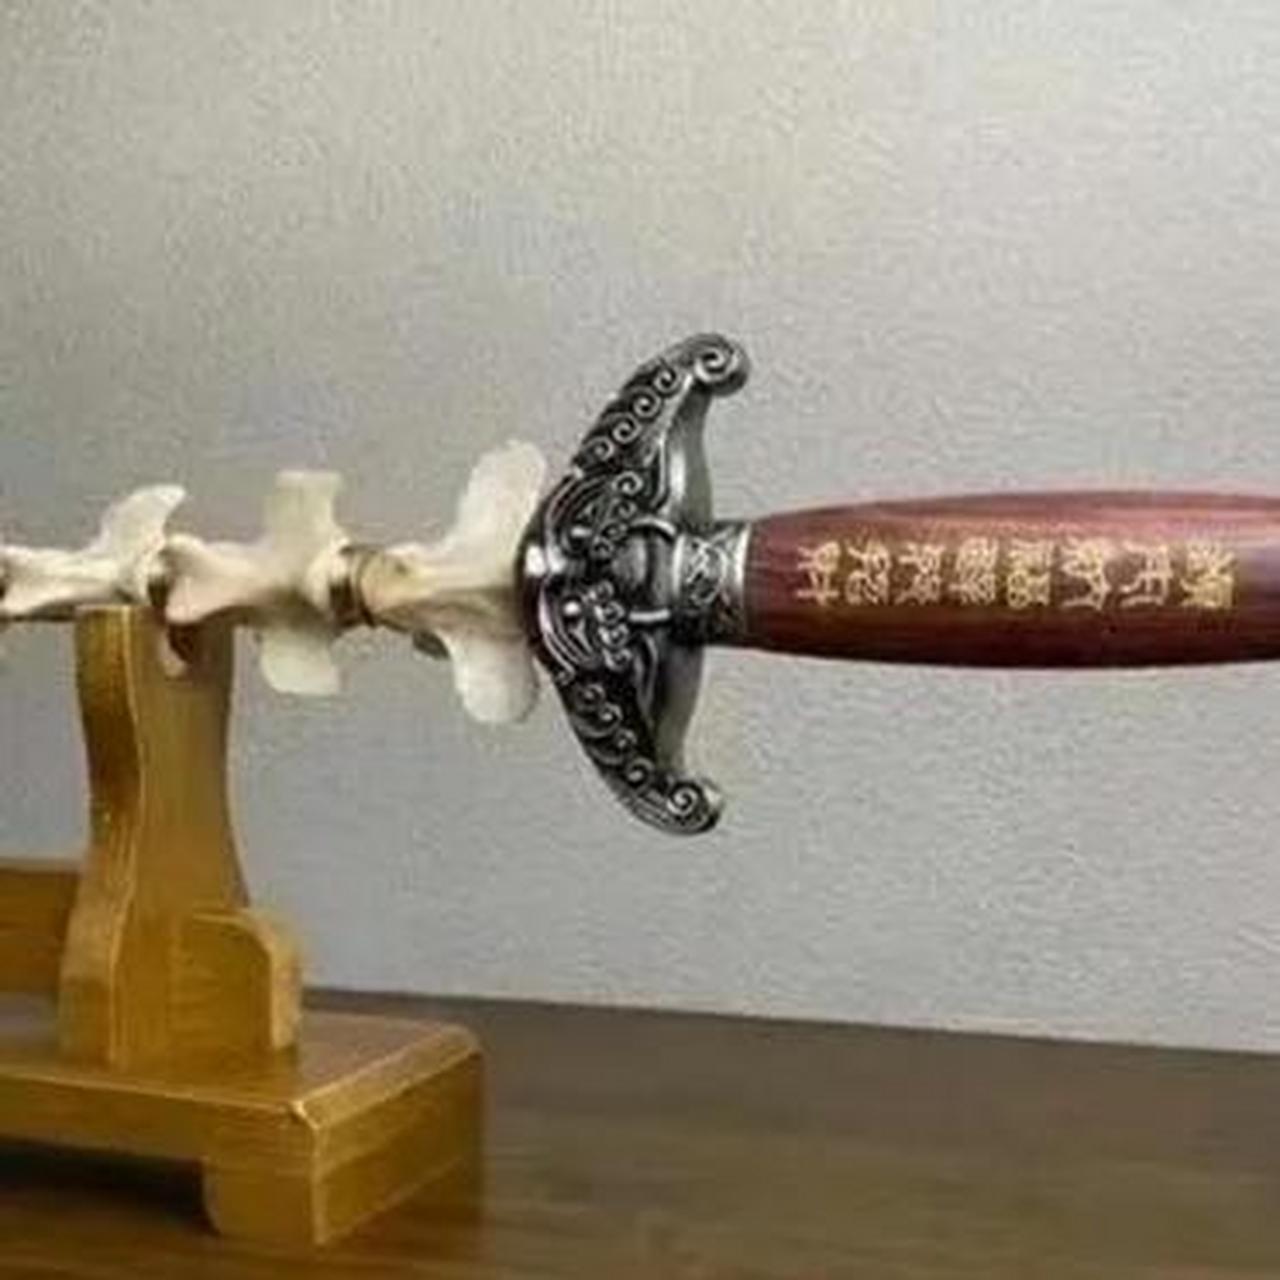 朋友家里一把骨头做的剑,也不知道是什么动物的